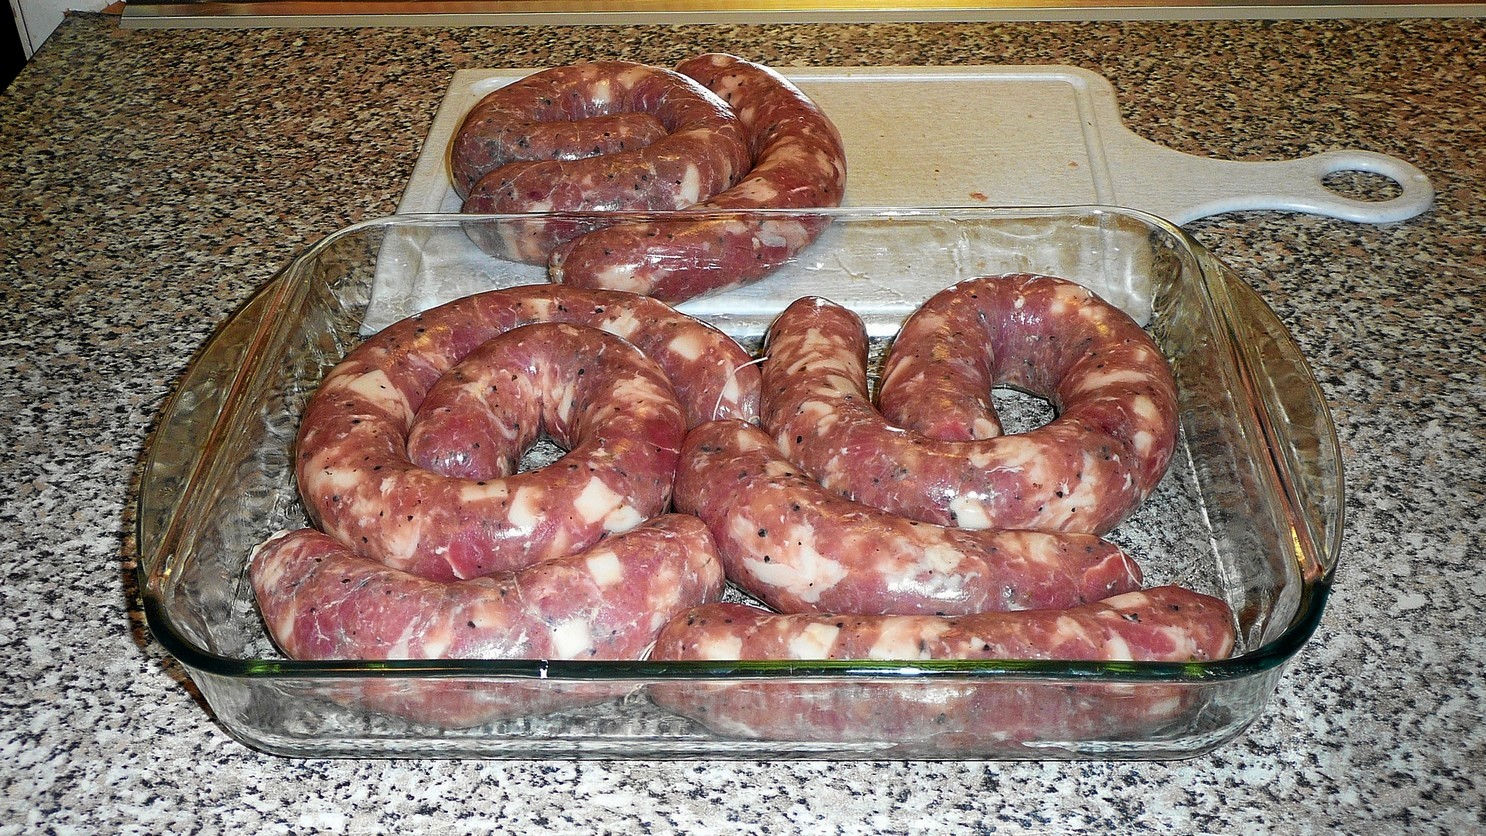 Как делать вареную колбасу в домашних условиях рецепт с фото пошагово